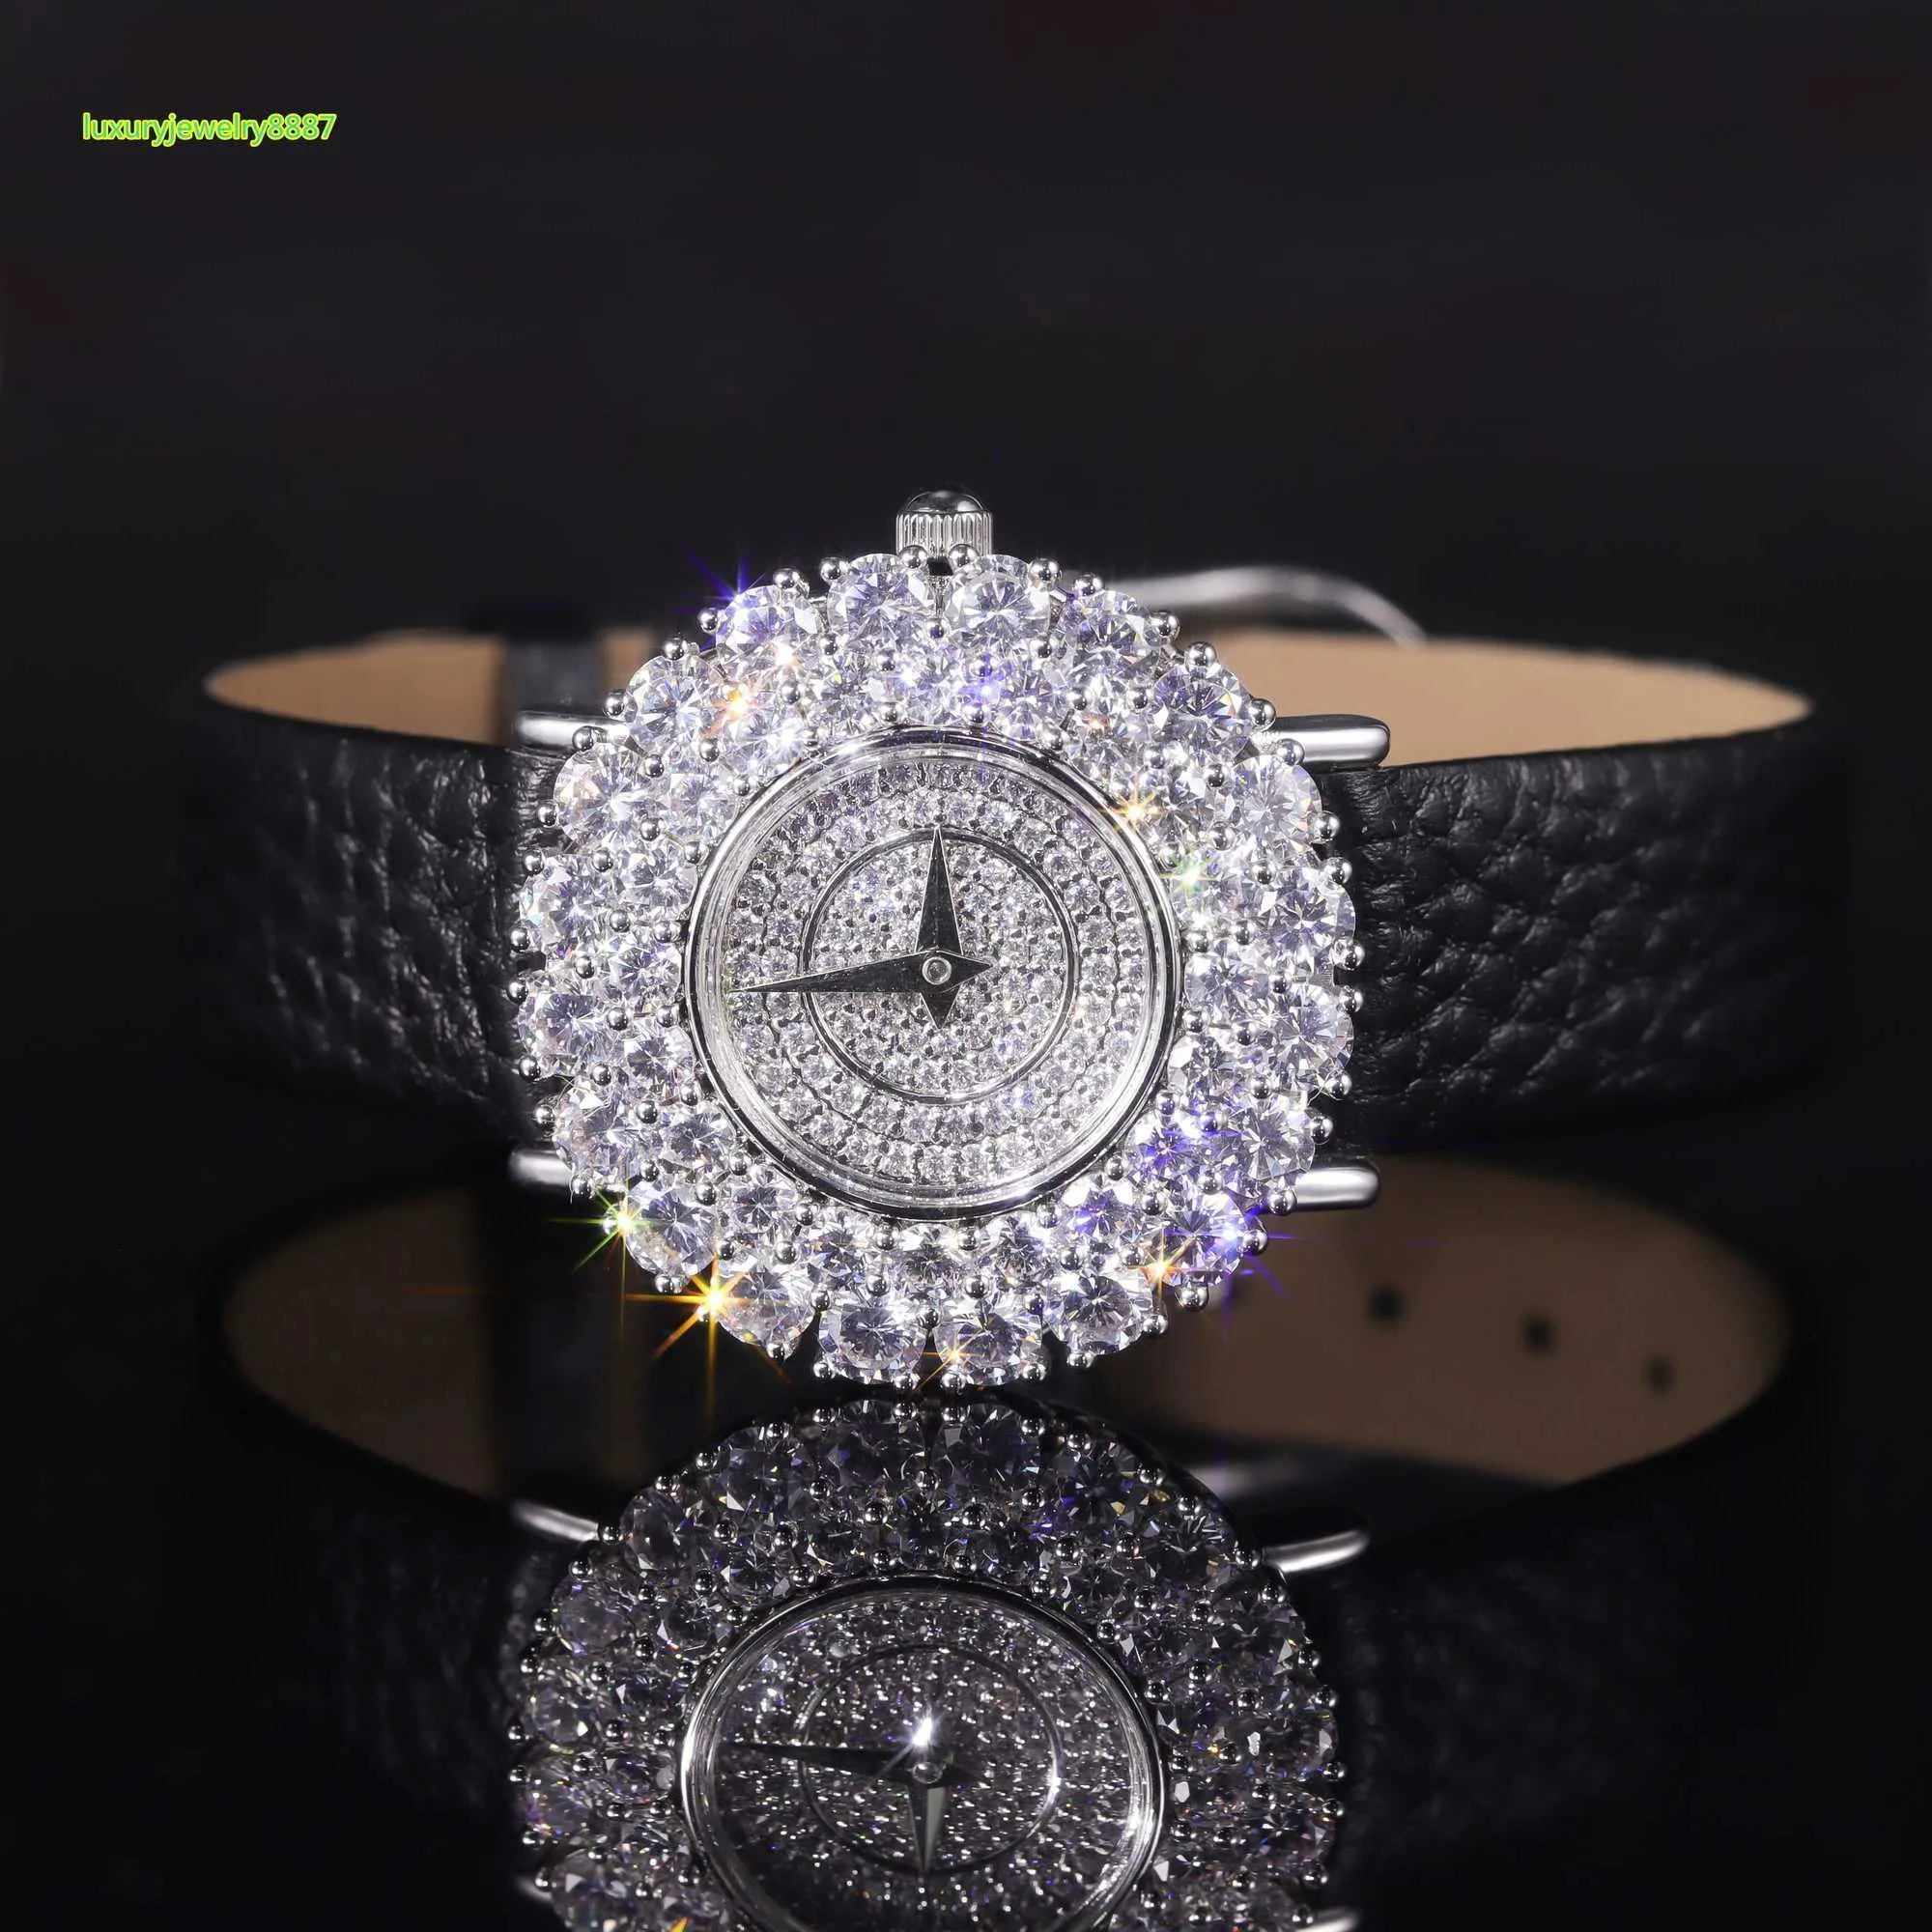 JW003FW Exquisito y duradero 9K 10K 14K 18K oro blanco Moissanite laboratorio cultivado diamante señoras relojes de oro de lujo para mujer